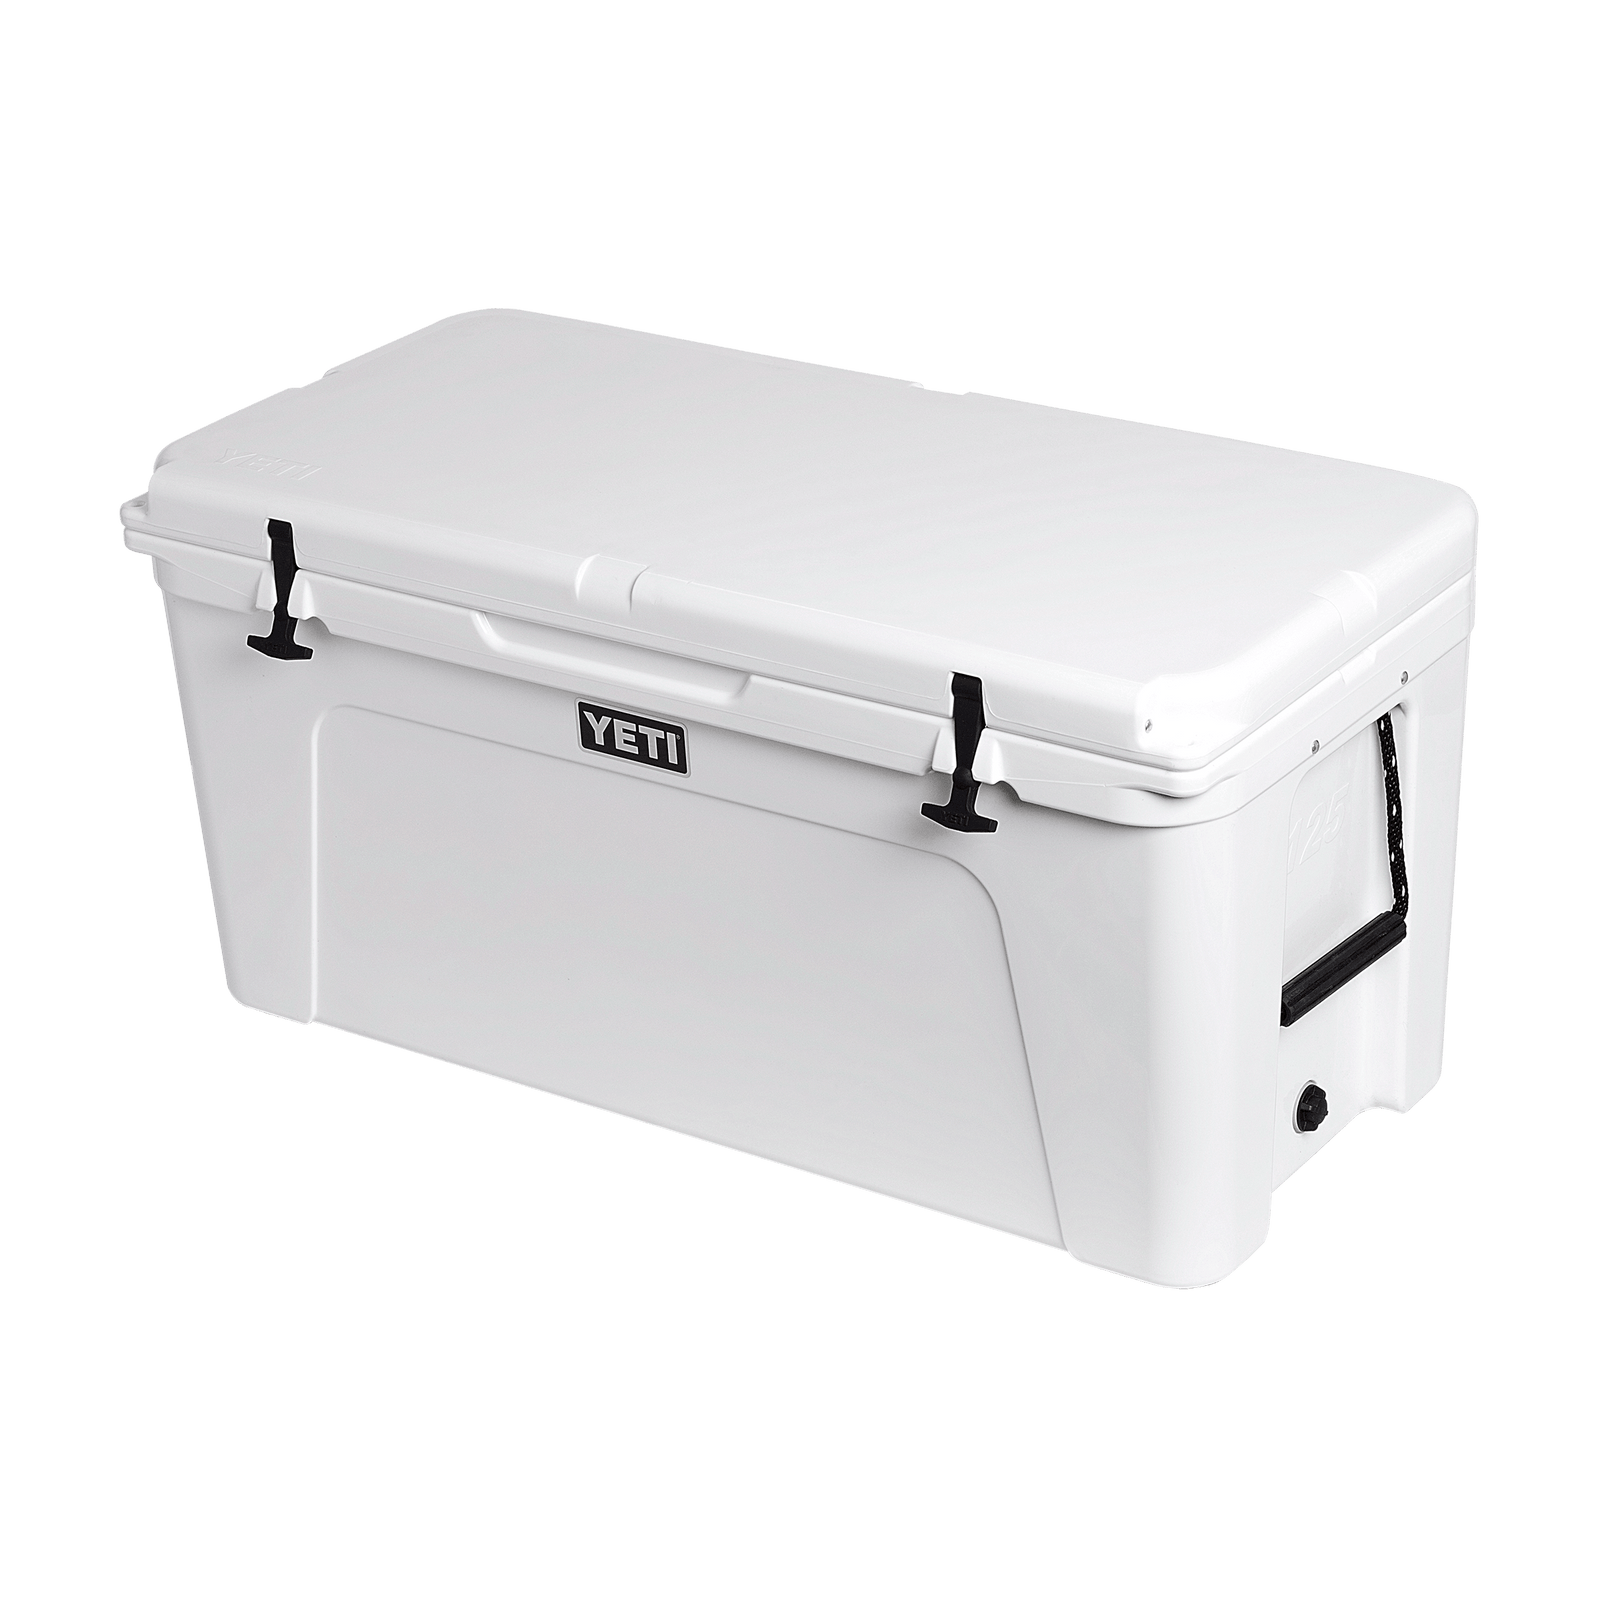 YETI Tundra 110 Cooler - White